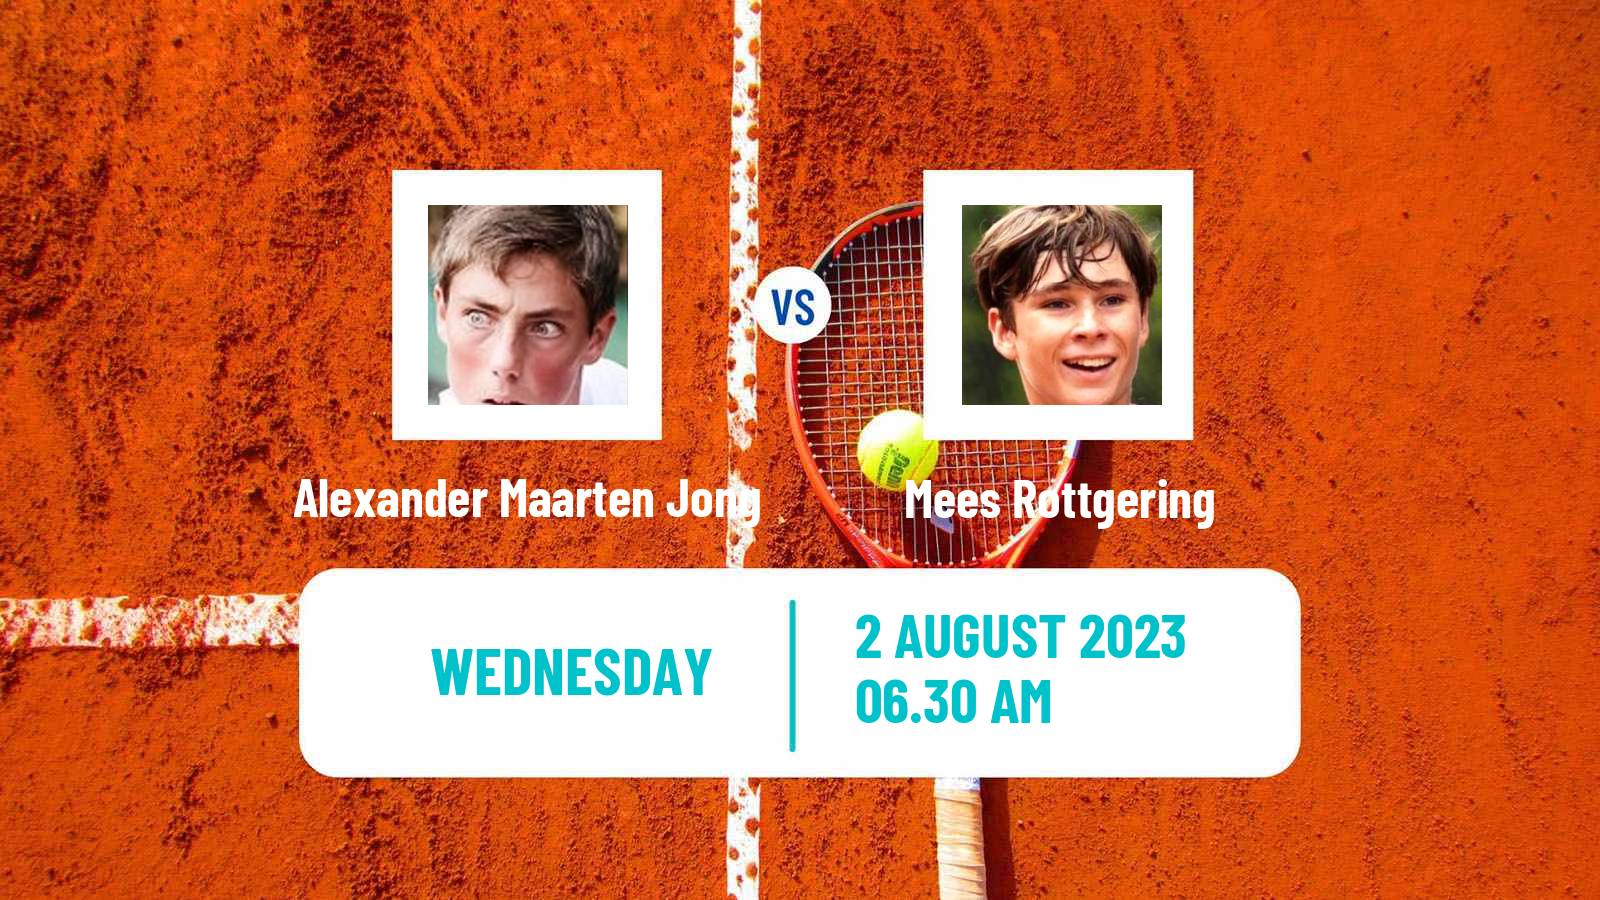 Tennis ITF M15 Eindhoven Men Alexander Maarten Jong - Mees Rottgering